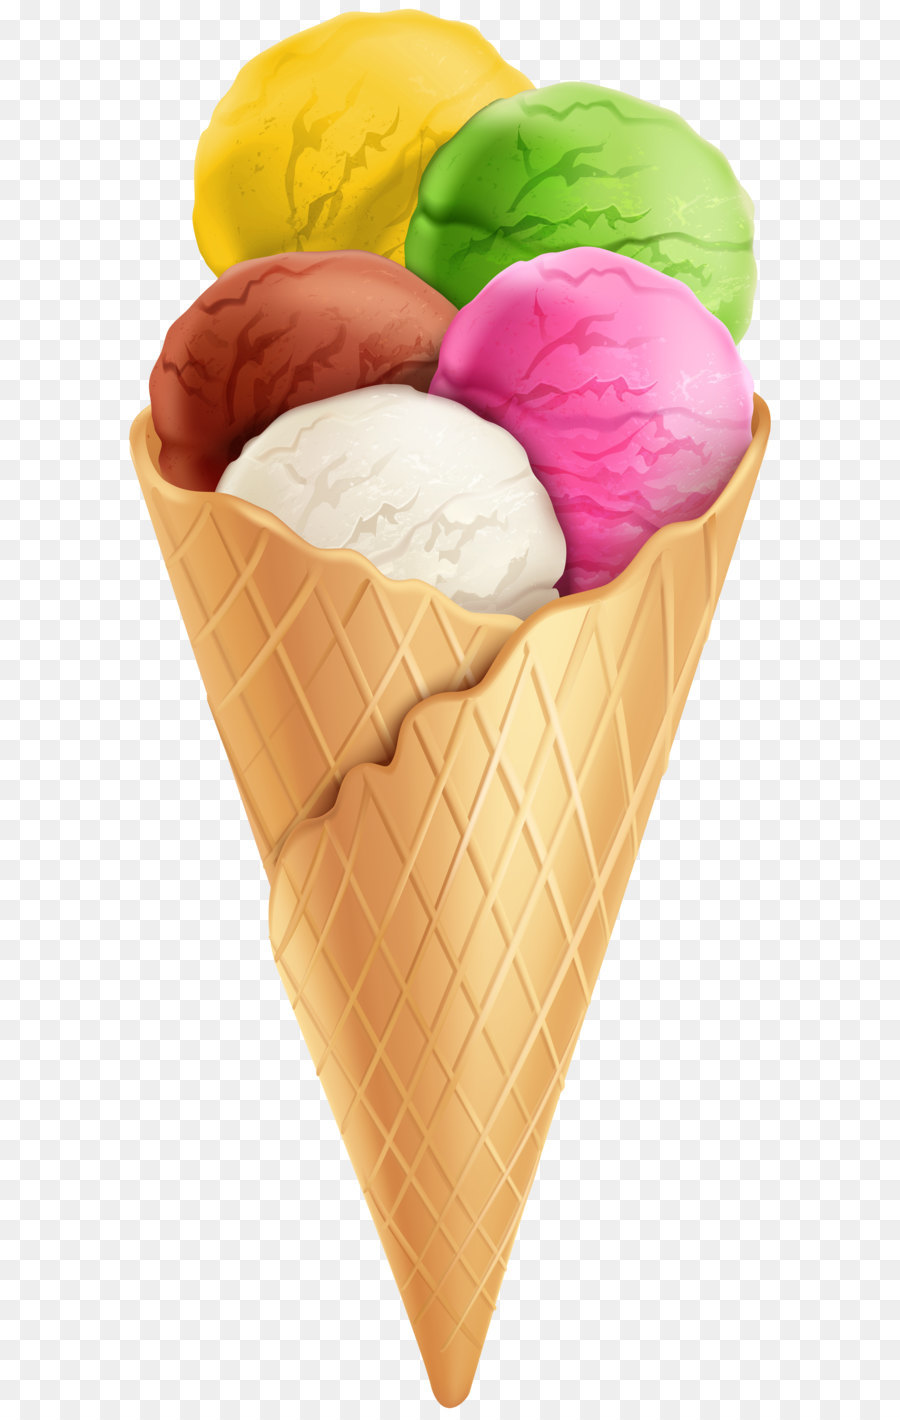 Ice cream cone Chocolate ice cream Neapolitan ice cream - Ice Cream Transparent PNG Clip Art Image png download - 3670*8000 - Free Transparent Ice Cream png Download.